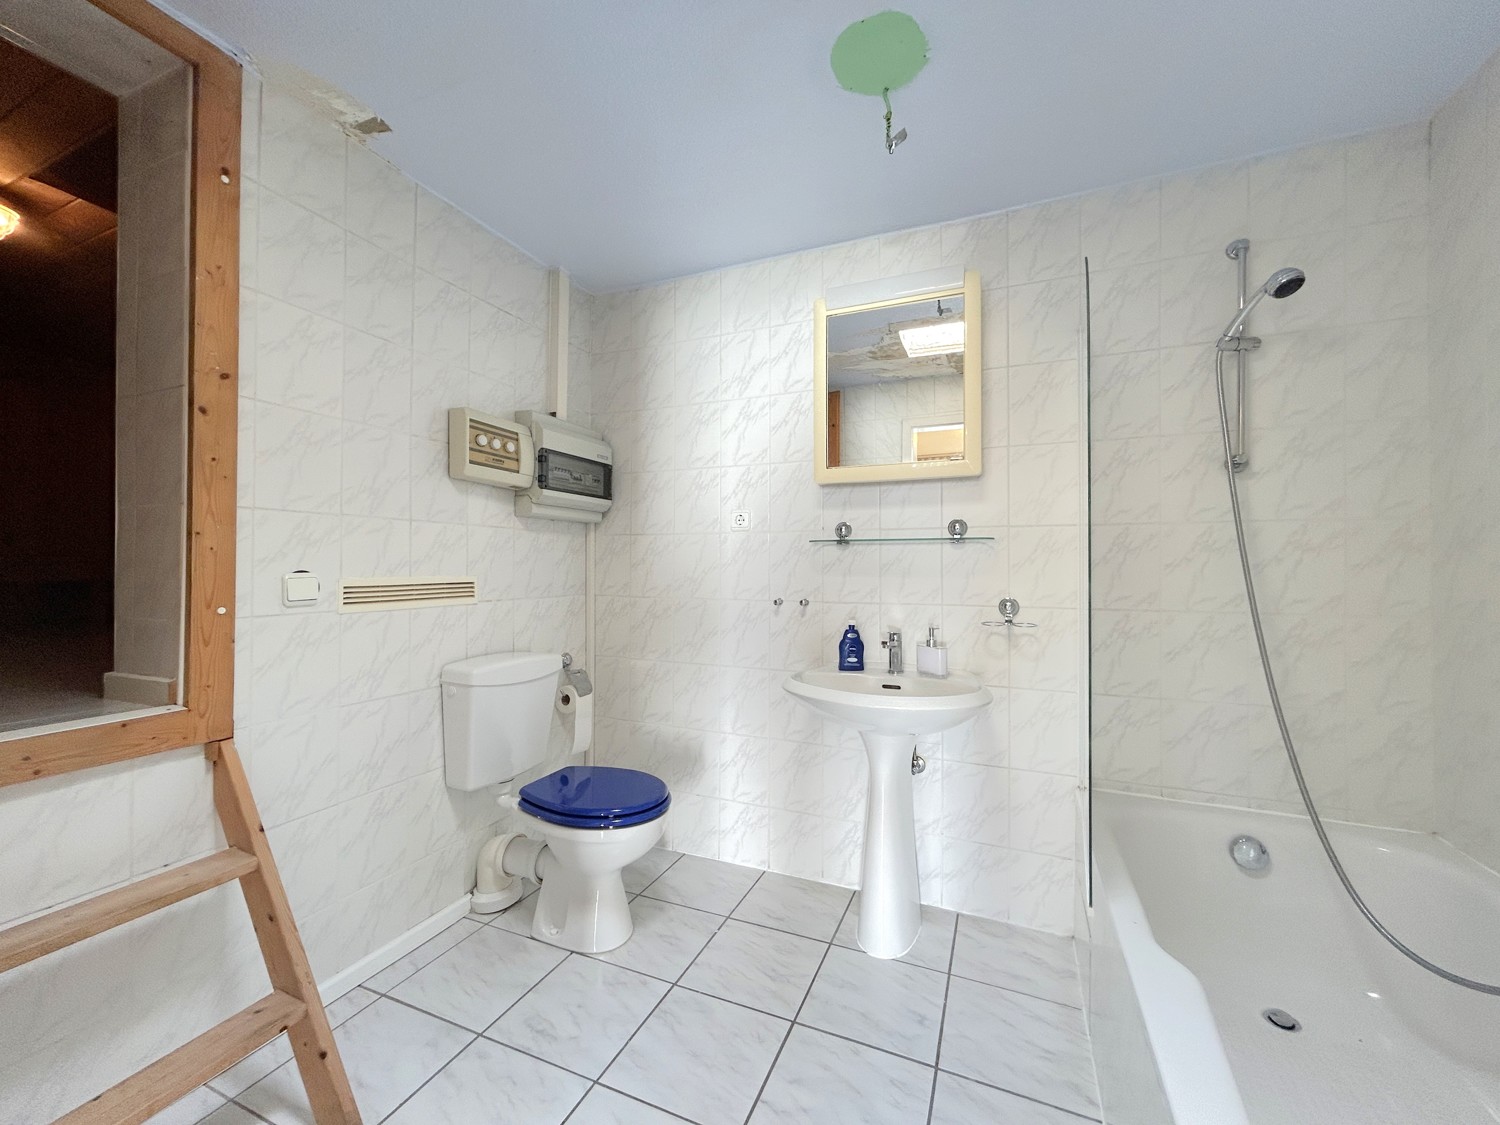 Badezimmer mit Dusche und Sauna in der Einliegerwohnung